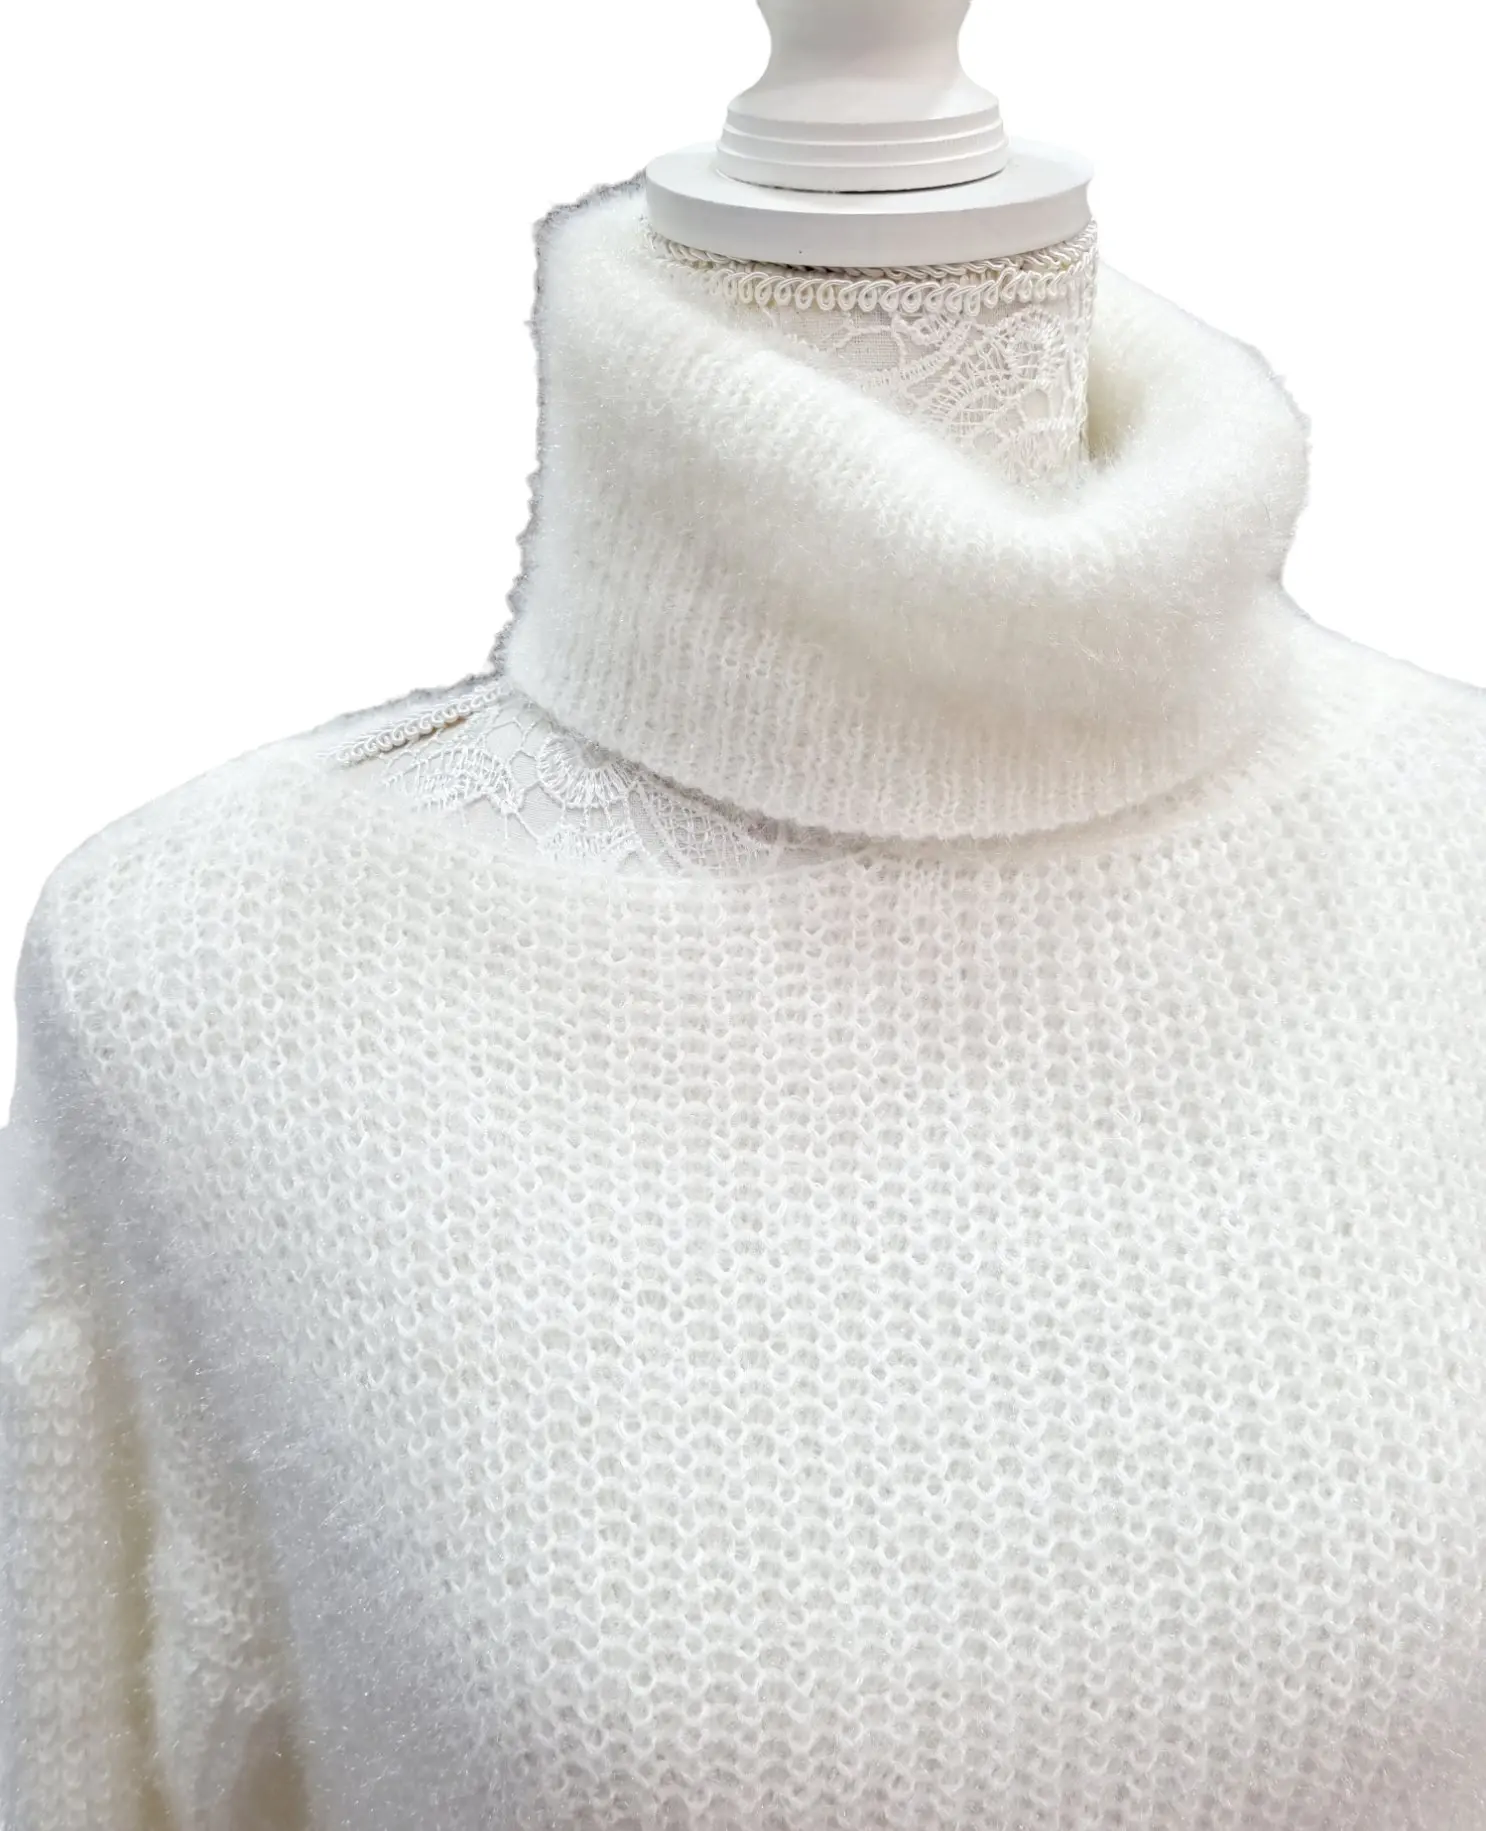 Suéter blanco suave y grueso de cuello alto con un hombro expuesto. talla única